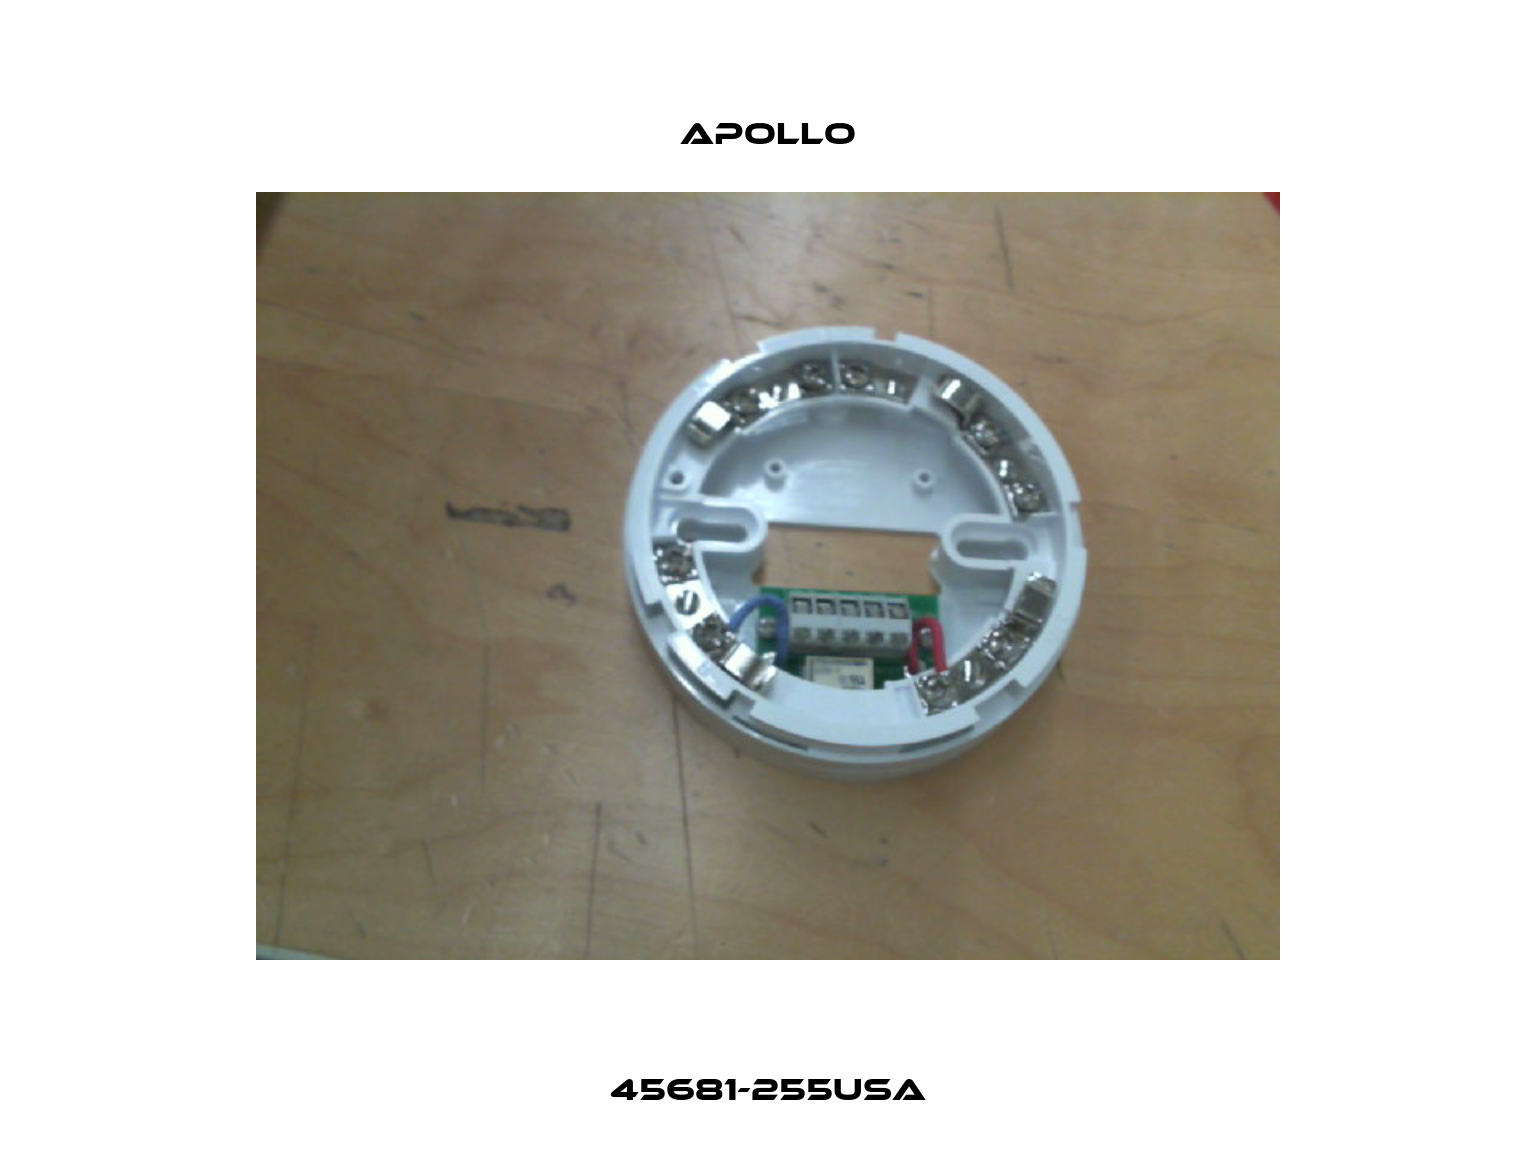 45681-255USA Apollo